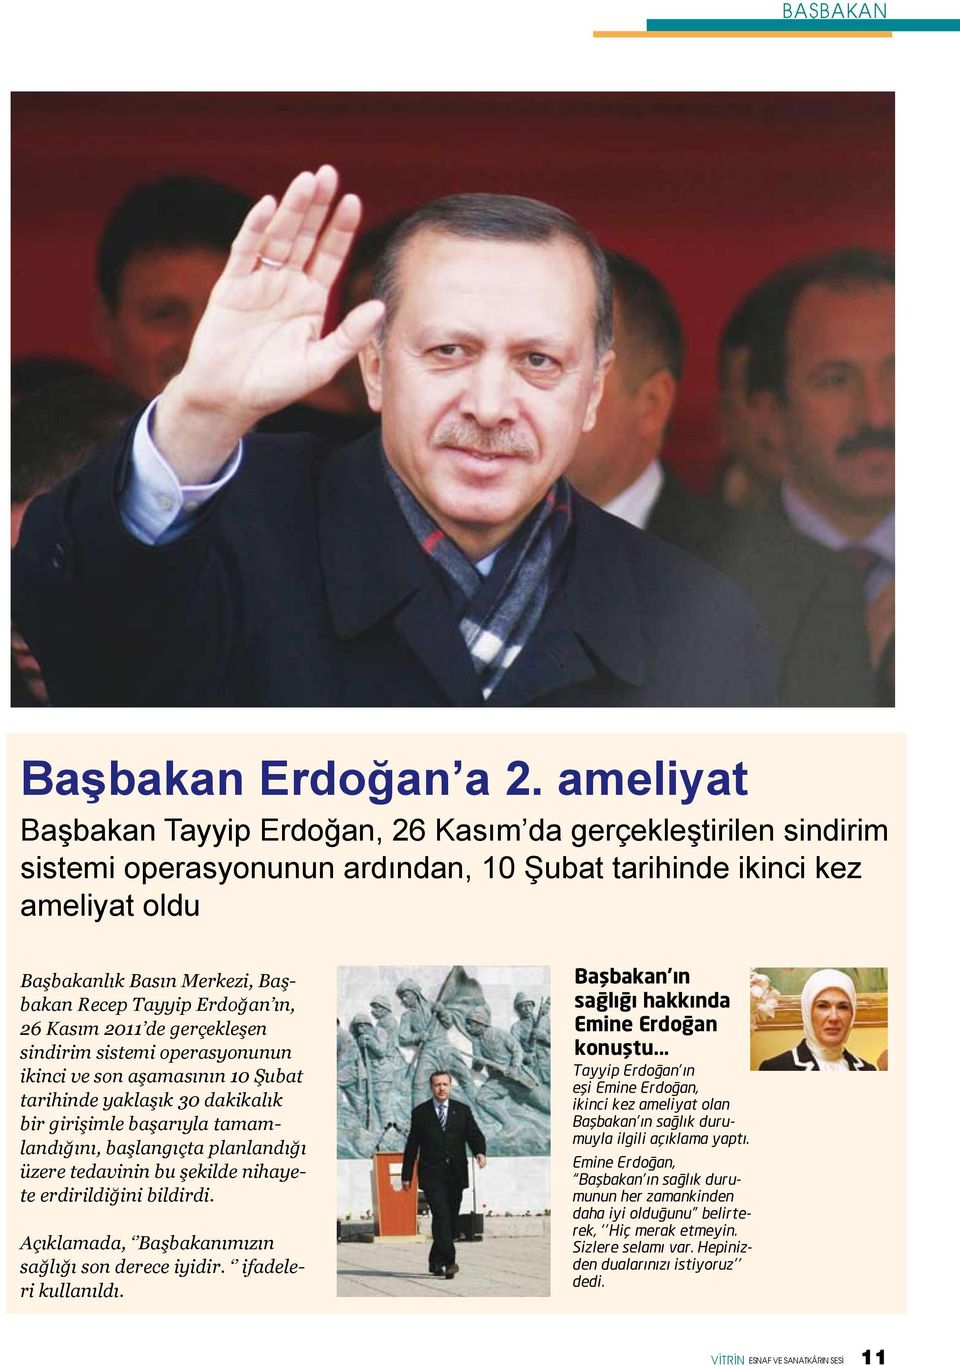 Erdoğan ın, 26 Kasım 2011 de gerçekleşen sindirim sistemi operasyonunun ikinci ve son aşamasının 10 Şubat tarihinde yaklaşık 30 dakikalık bir girişimle başarıyla tamamlandığını, başlangıçta